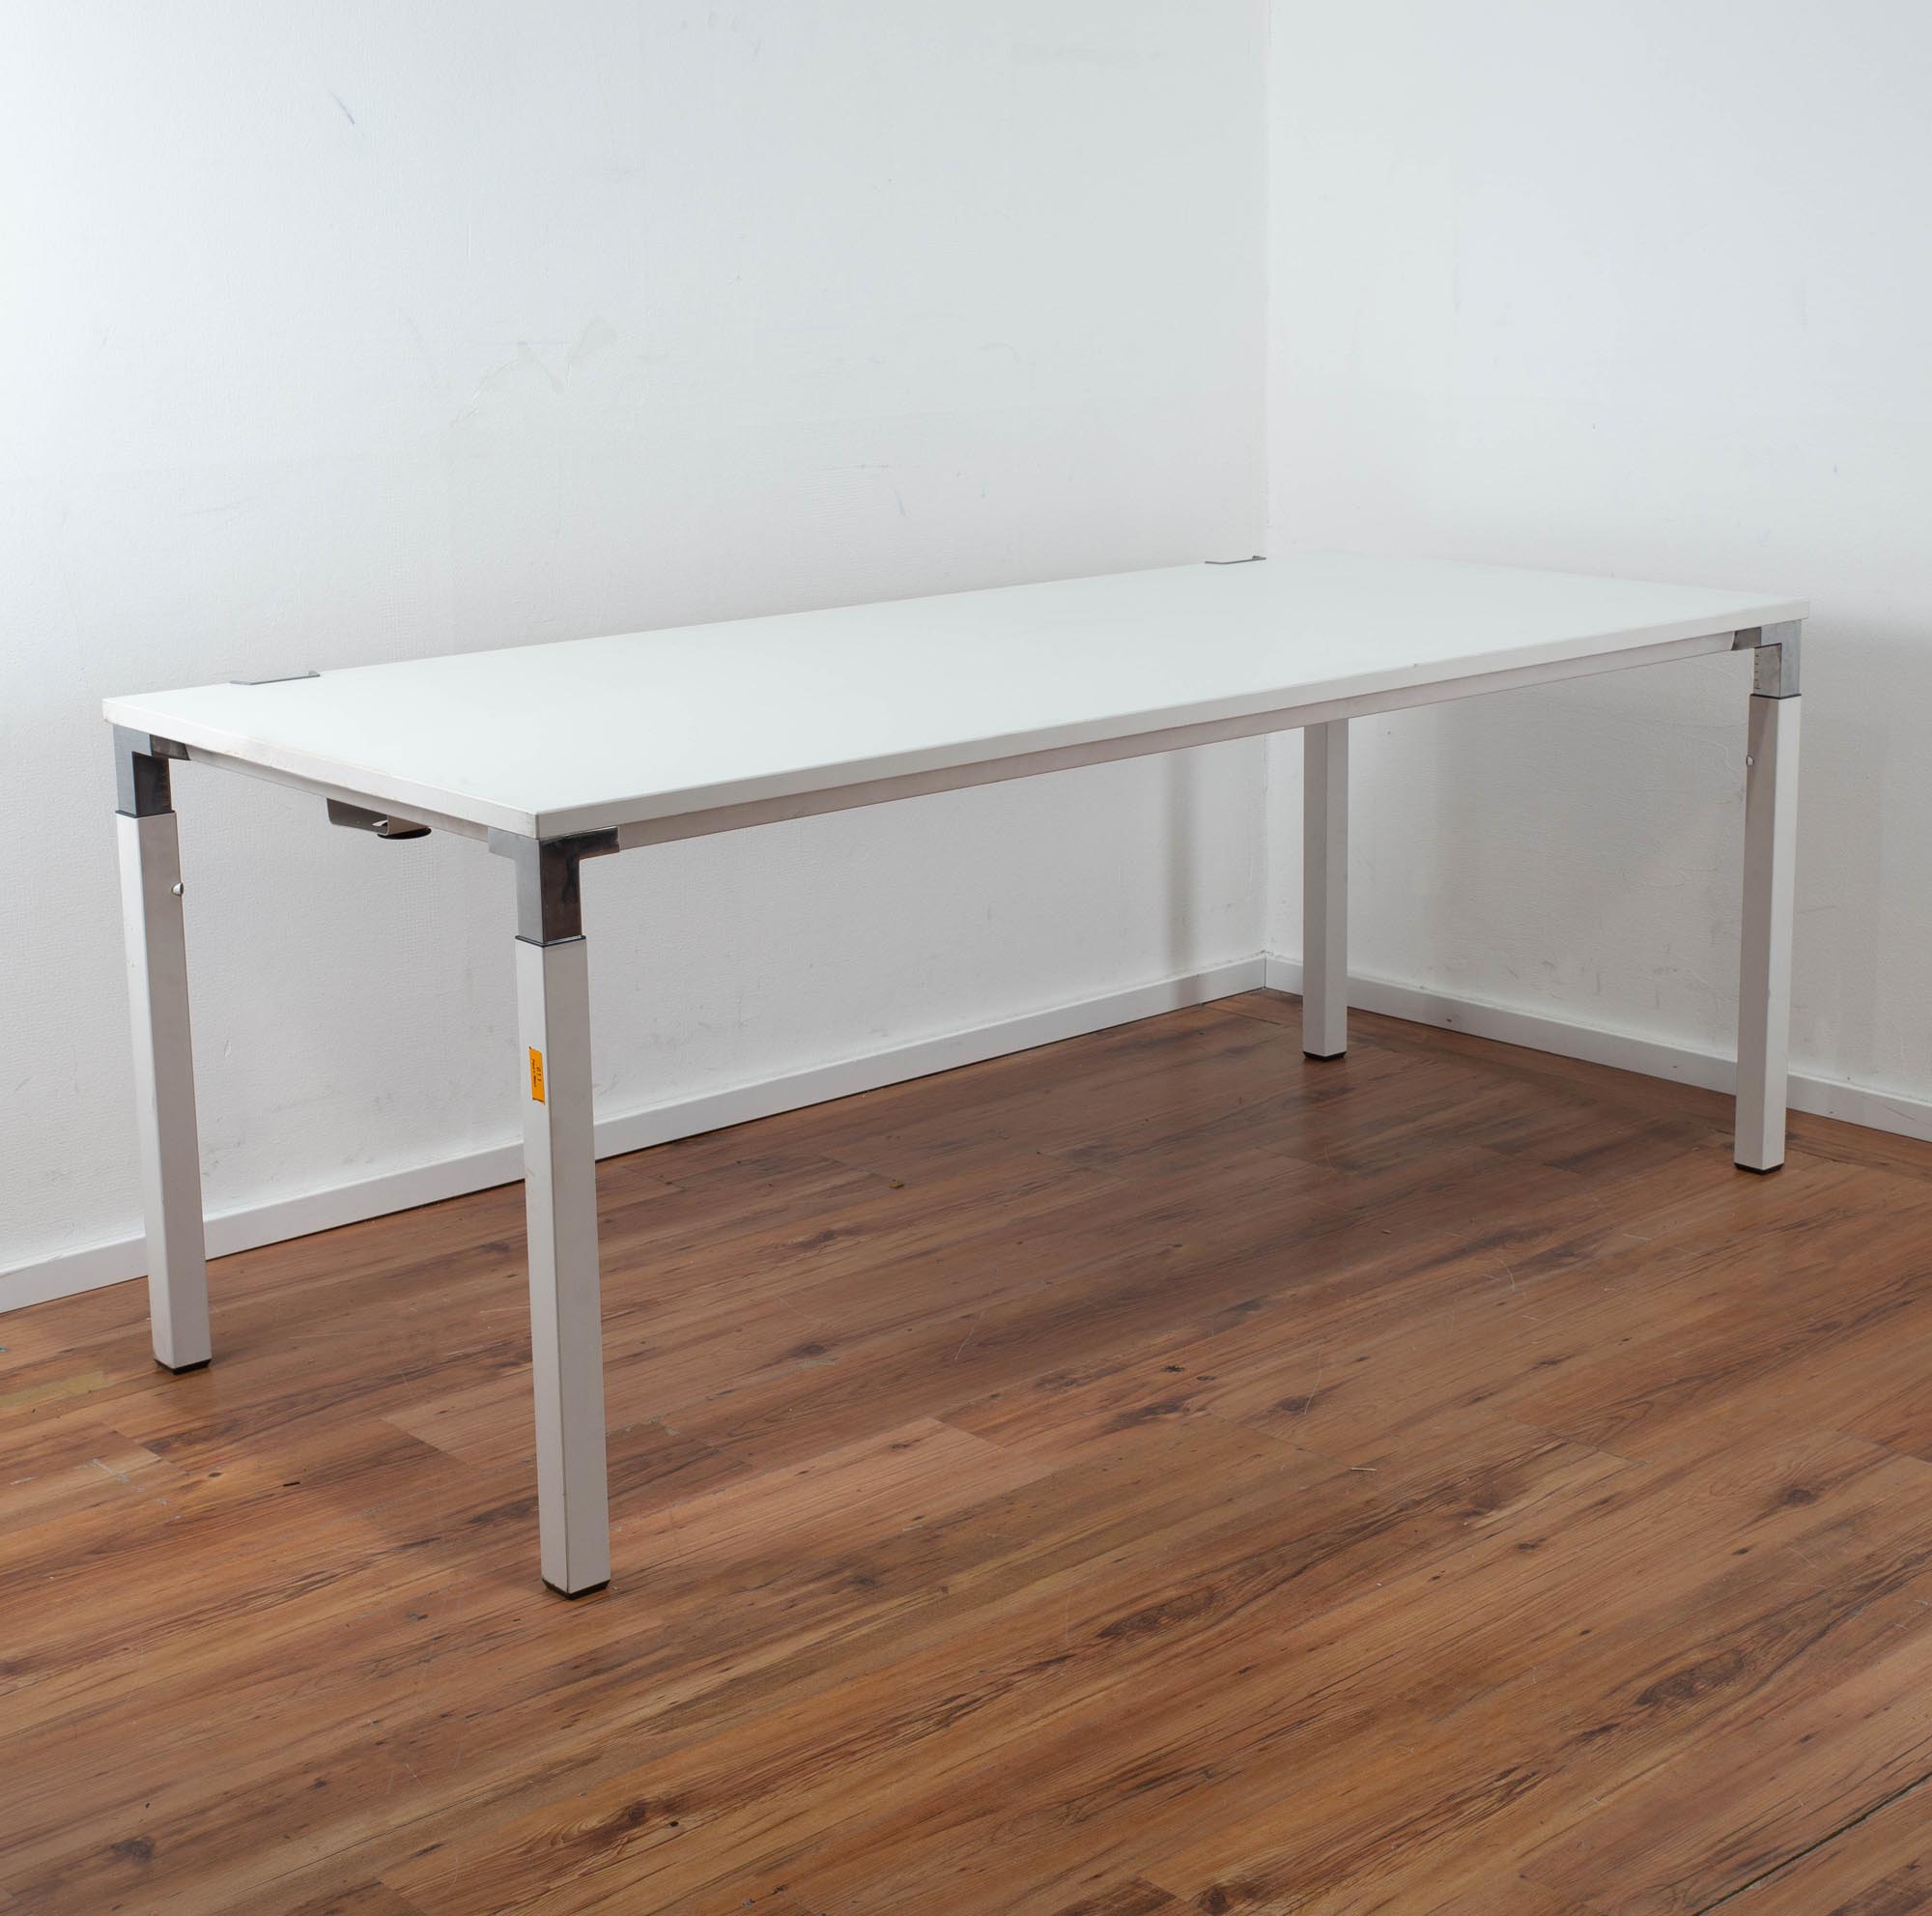 Steelcase Schreibtisch weiß - 180 x 80 cm - 4-Fußgestell - manuell in der Höhe anpassbar 